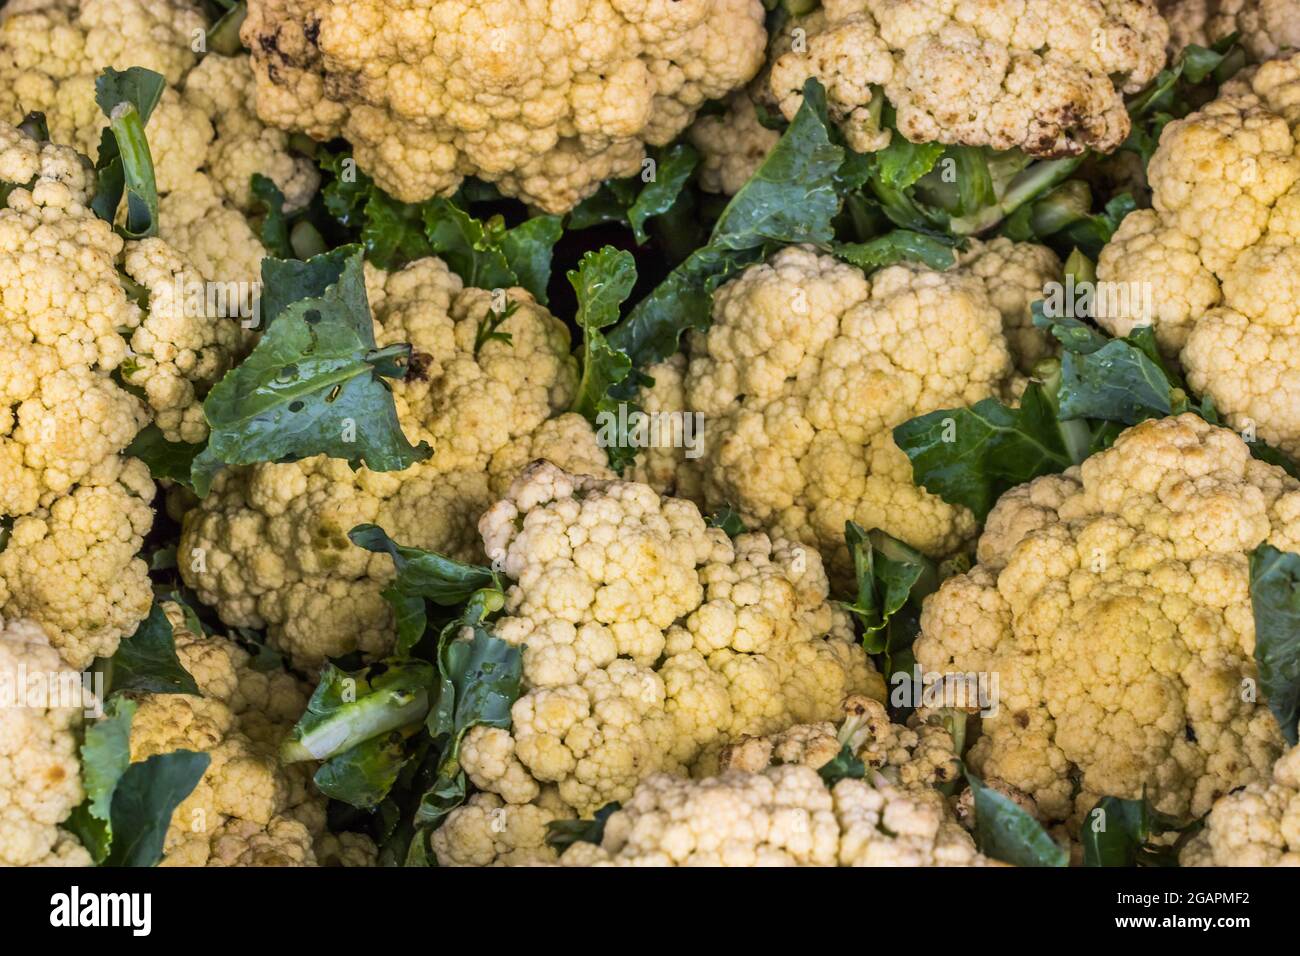 Cauliflower in a stall in Nuwara Eliya Sri Lanka Stock Photo